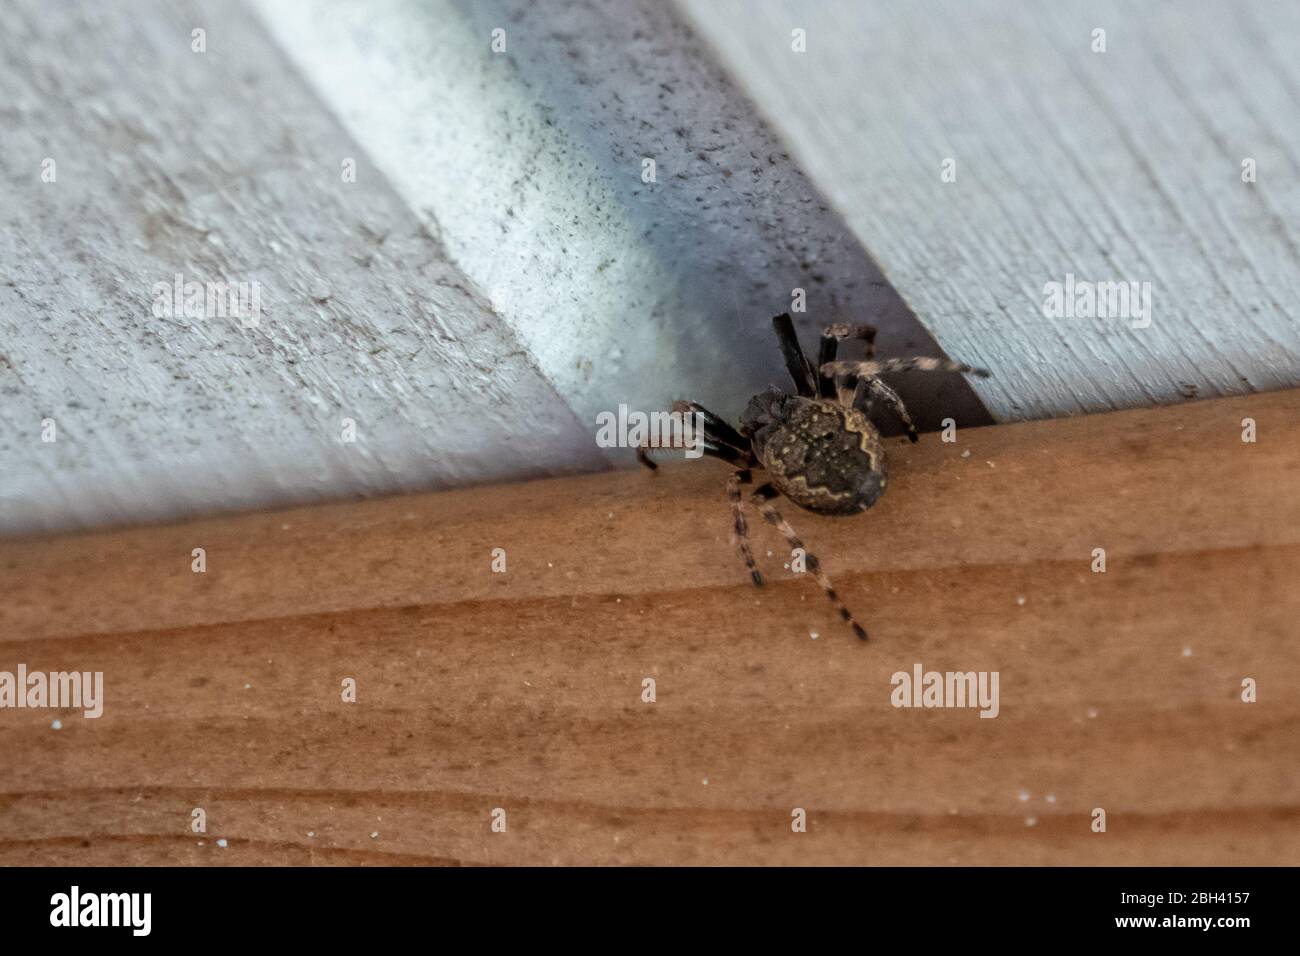 une araignée grasse rampent dans une fissure à cacher Banque D'Images